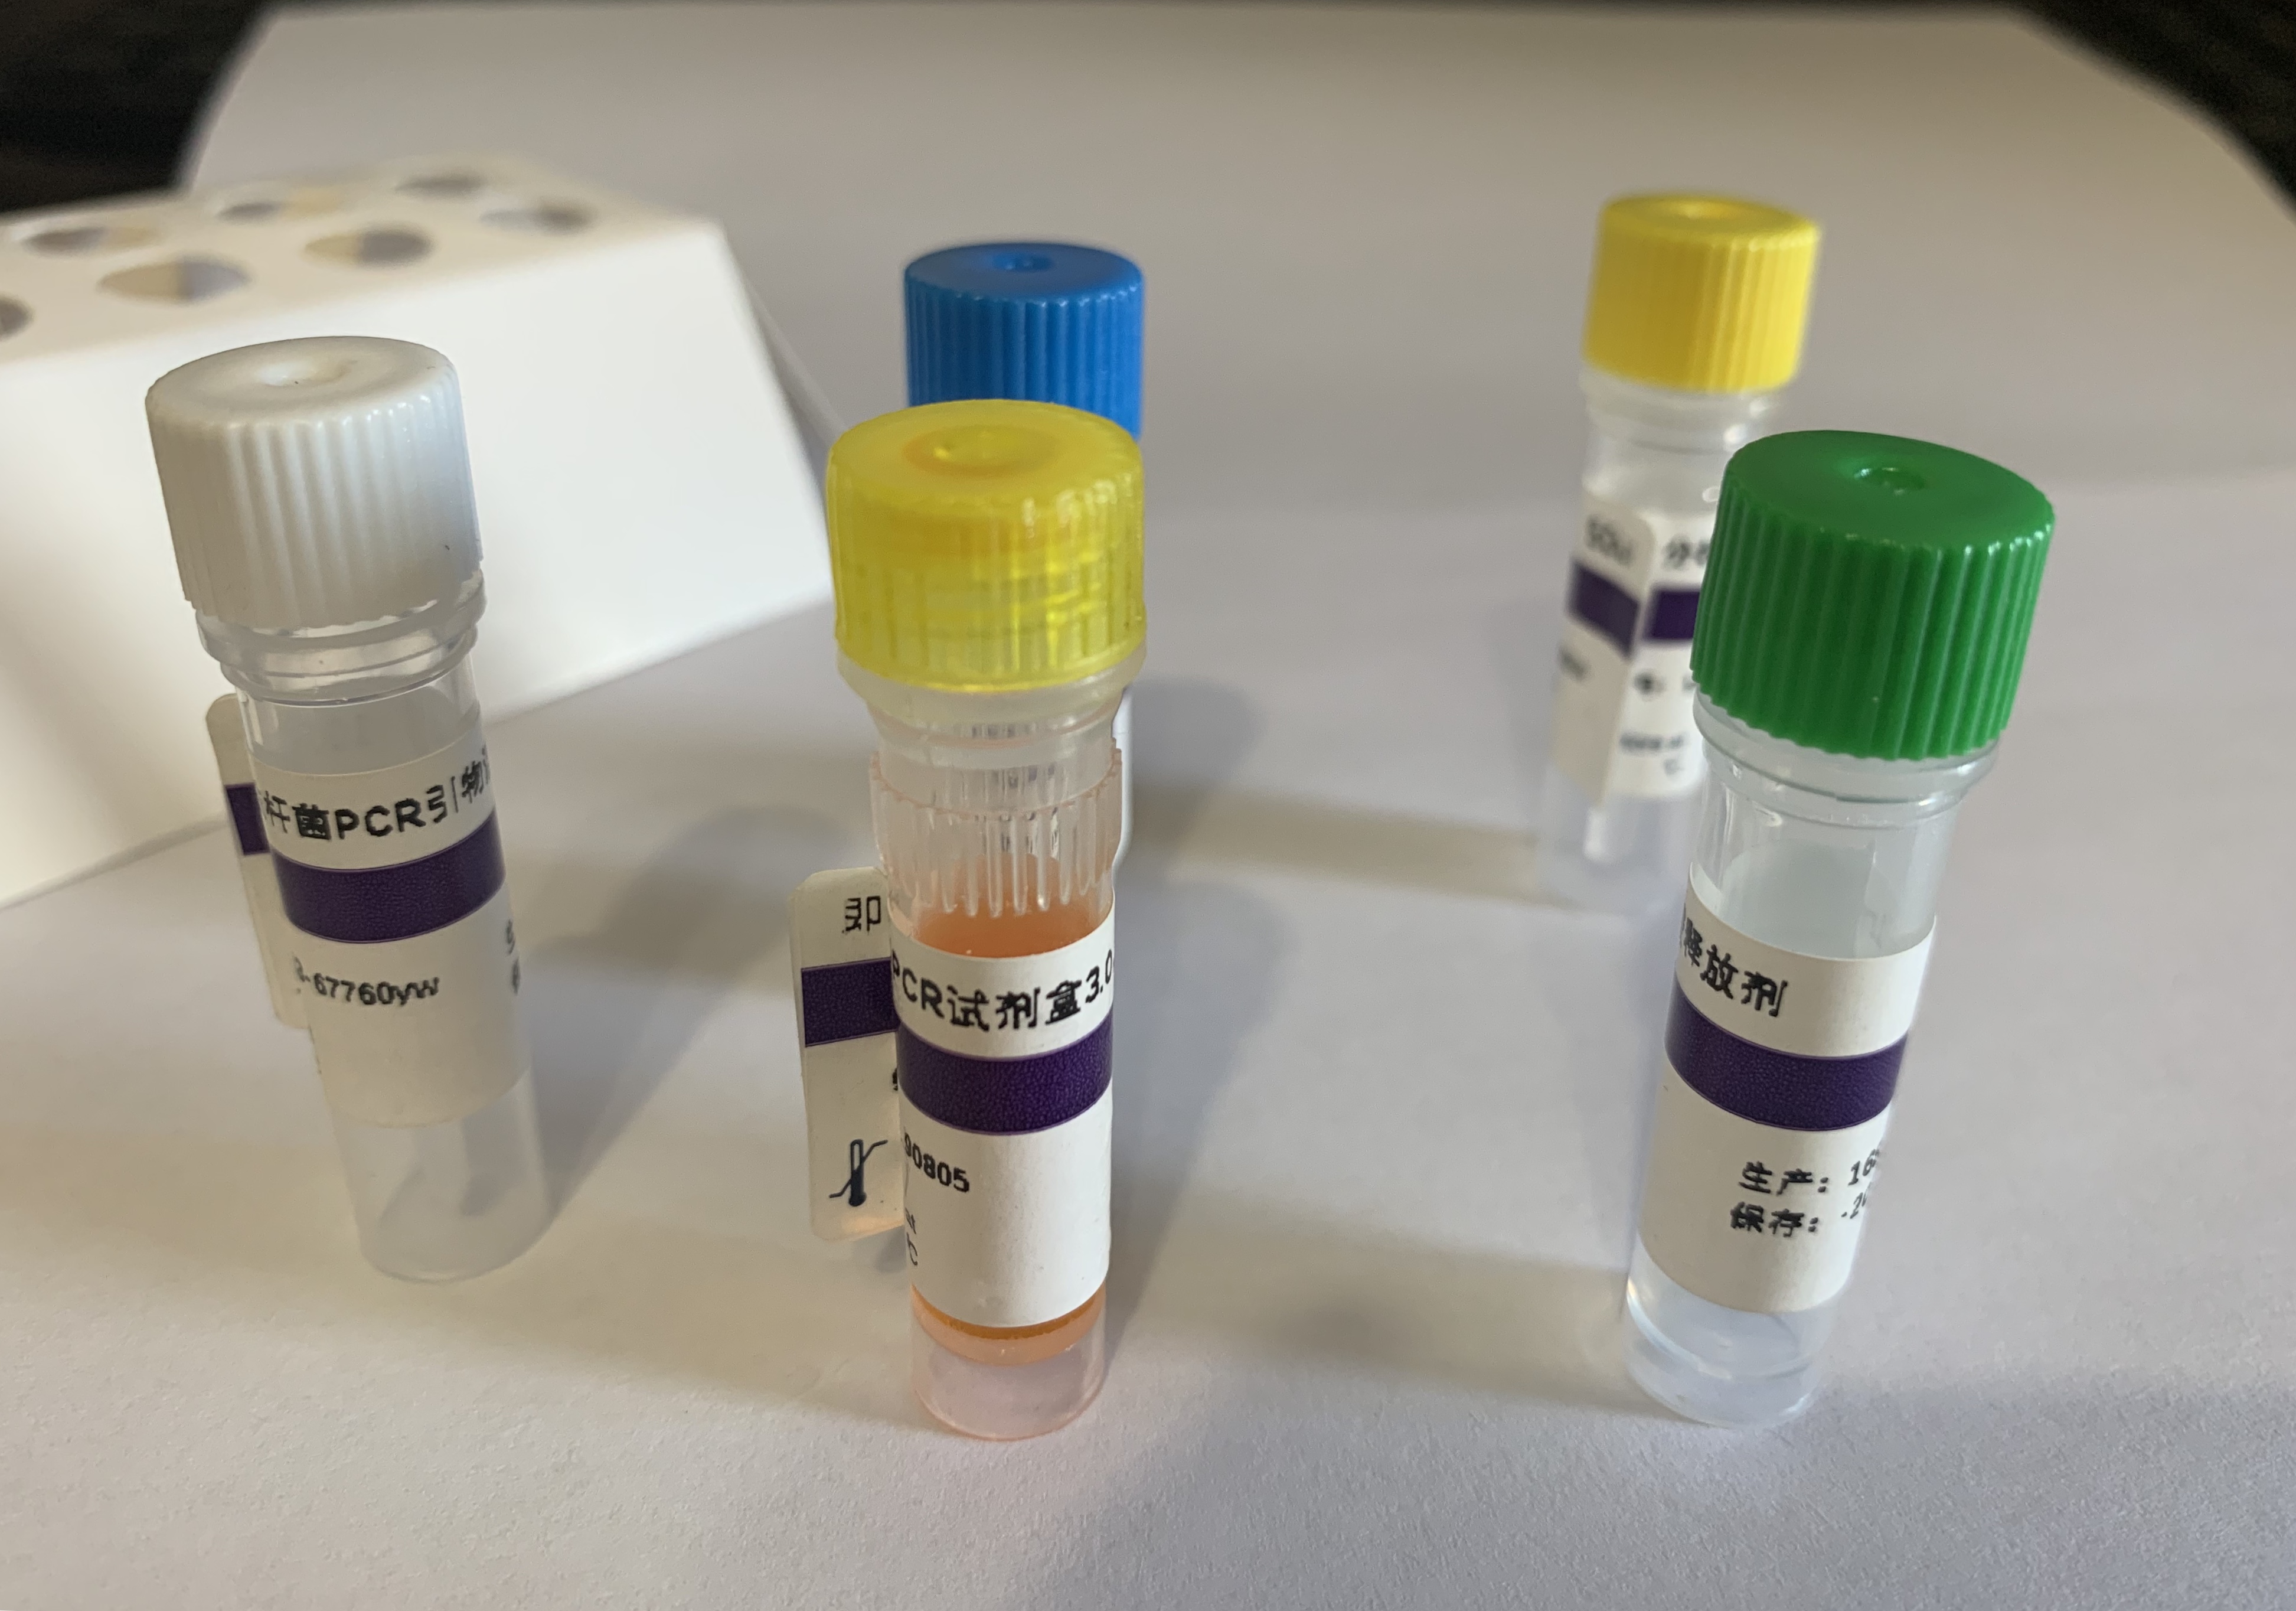 鸡传染性喉气管炎病毒PCR试剂盒